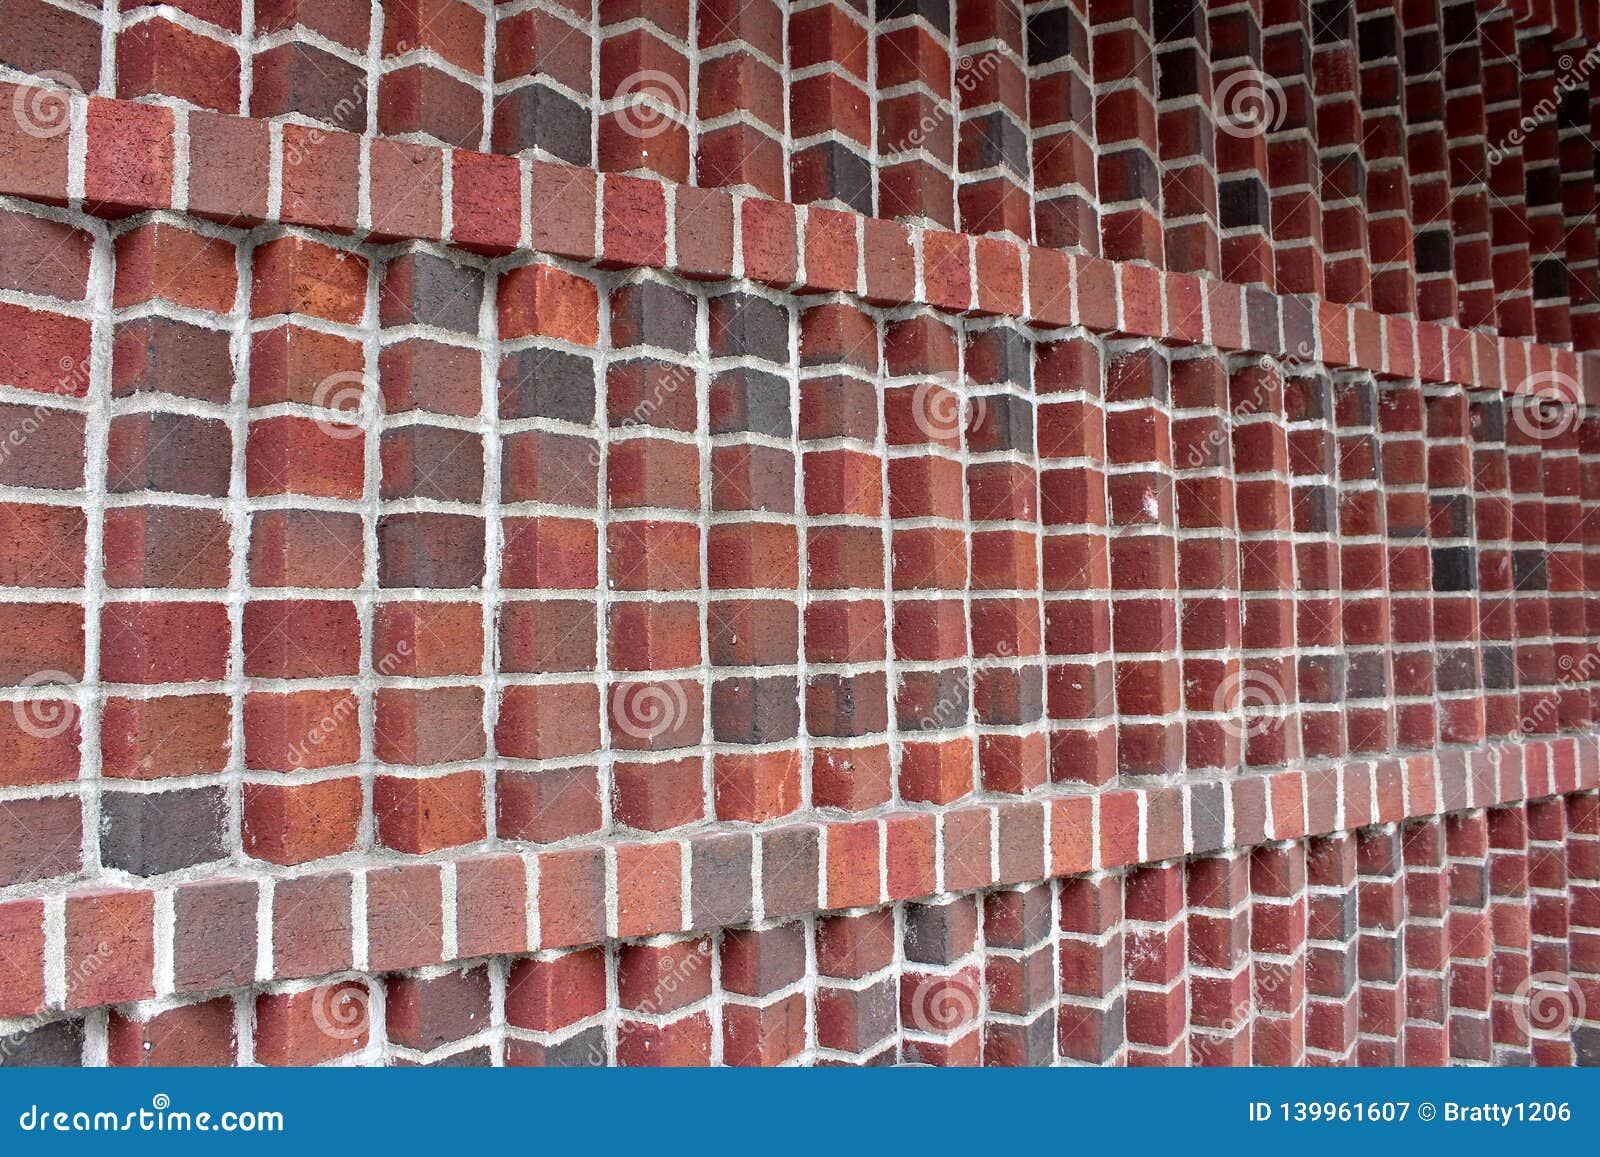 佛山瓷砖厂家 连纹通体大理石瓷砖800x800防滑地砖客厅抛釉地板砖-阿里巴巴